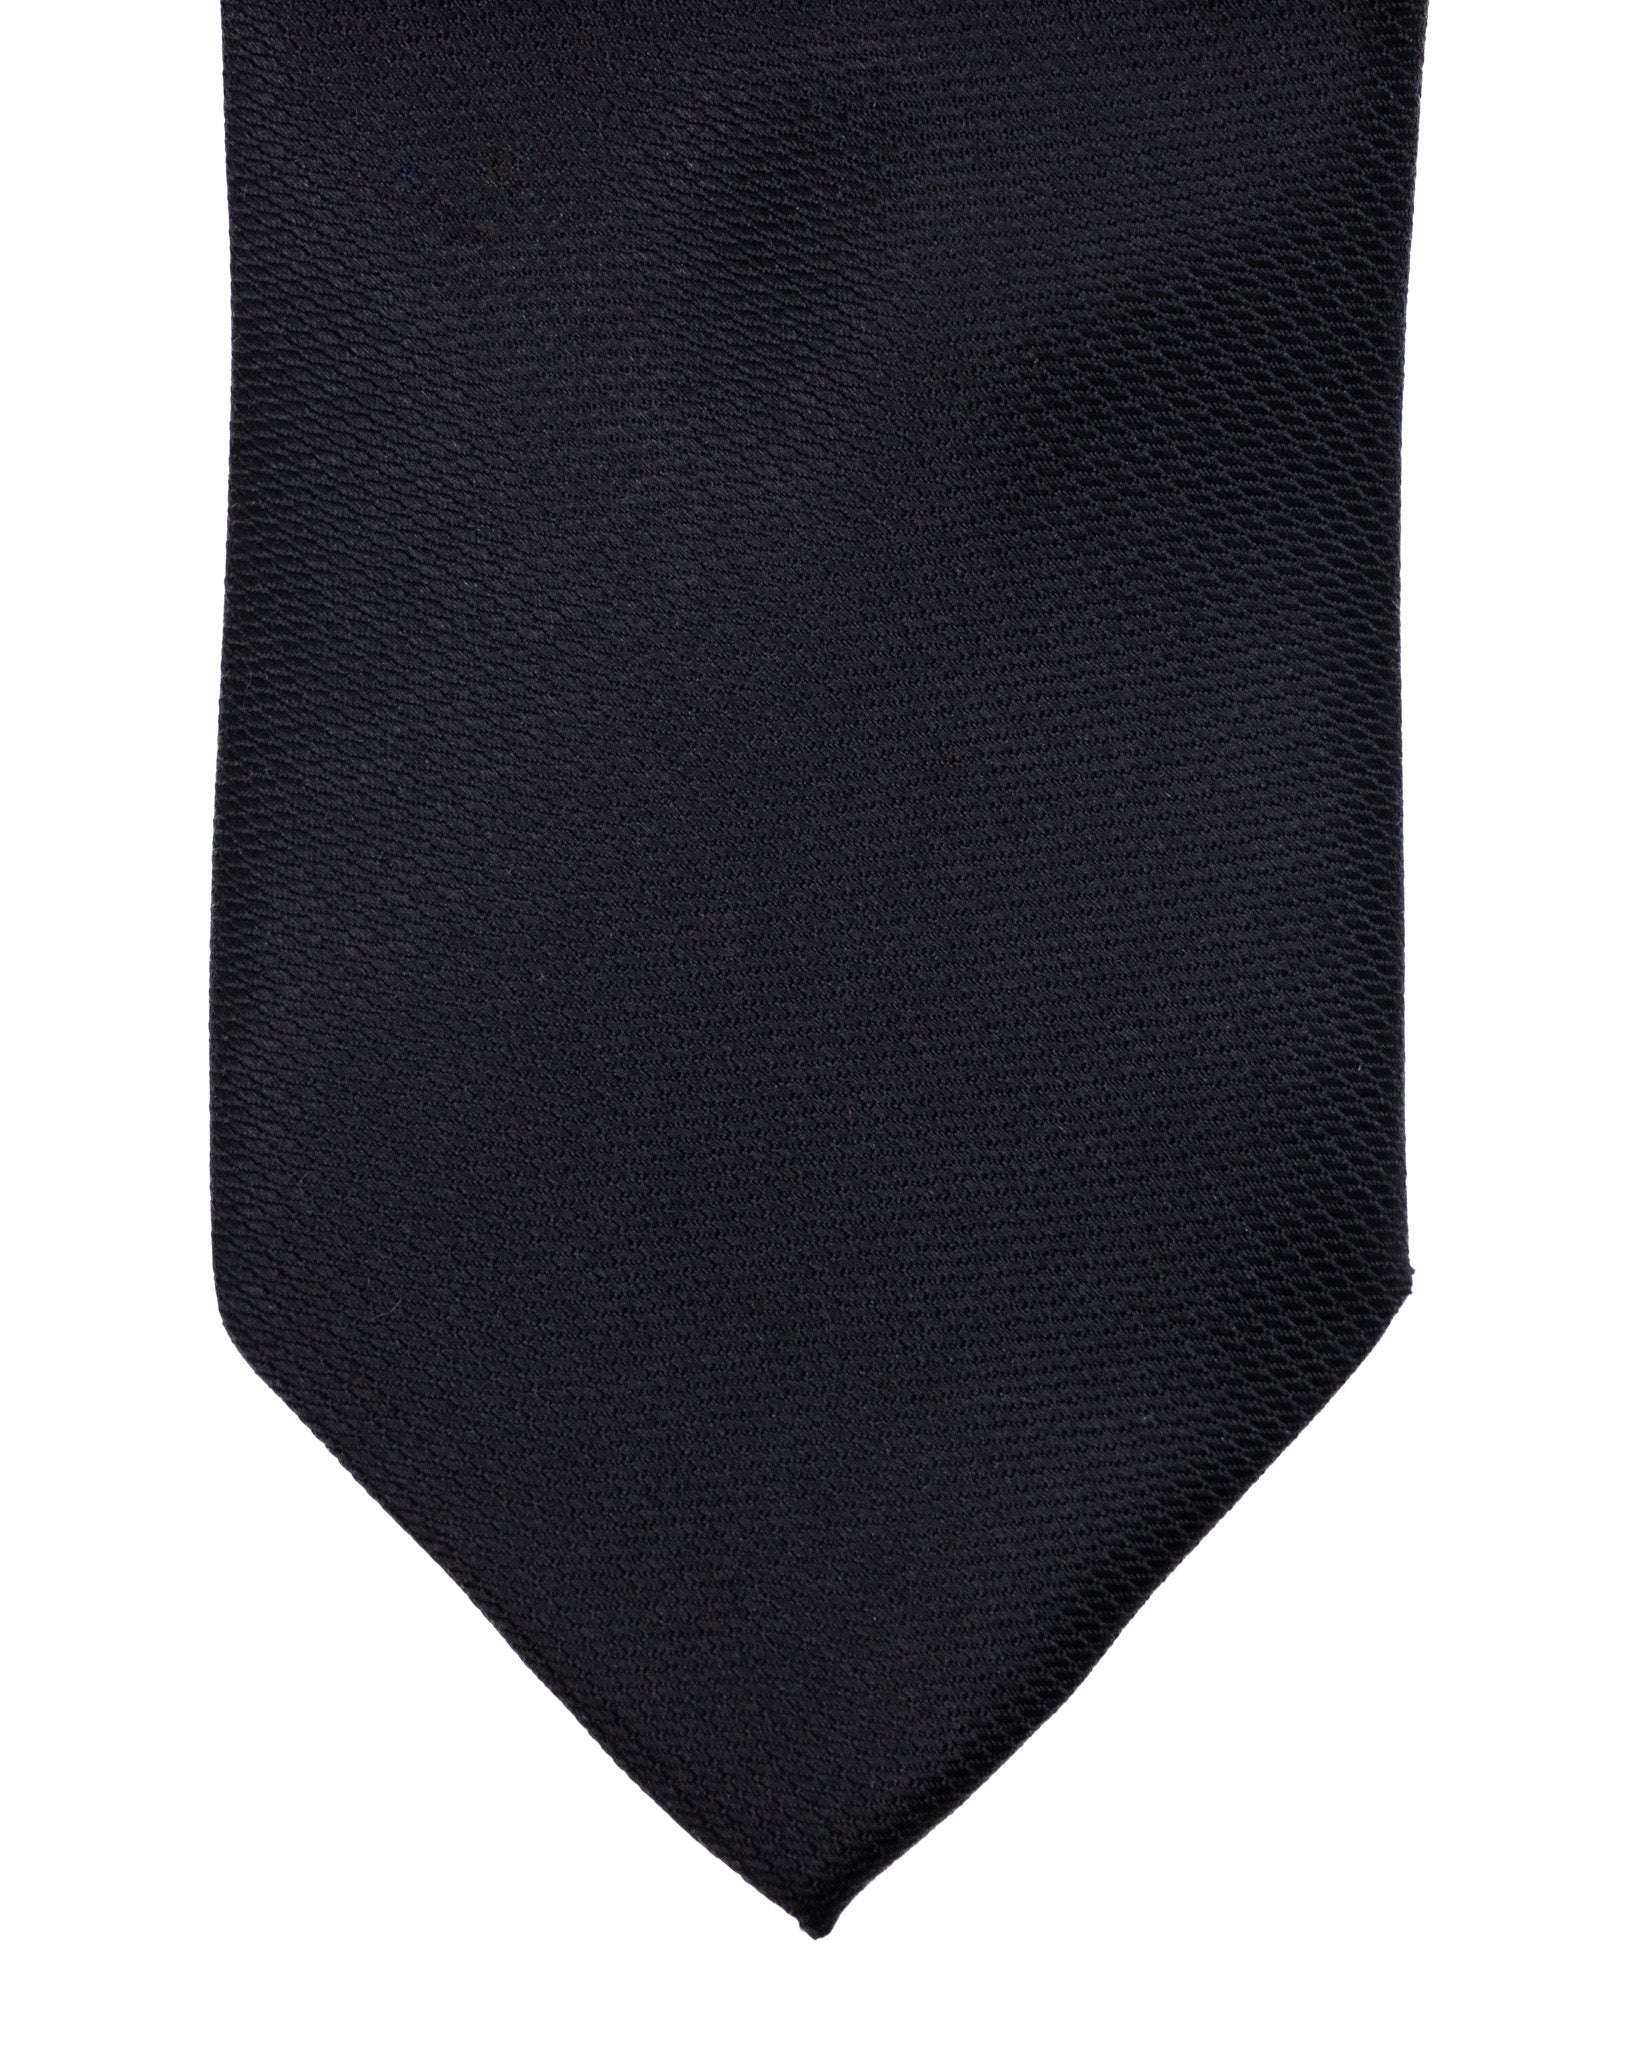 Cravate - en soie texturée noire